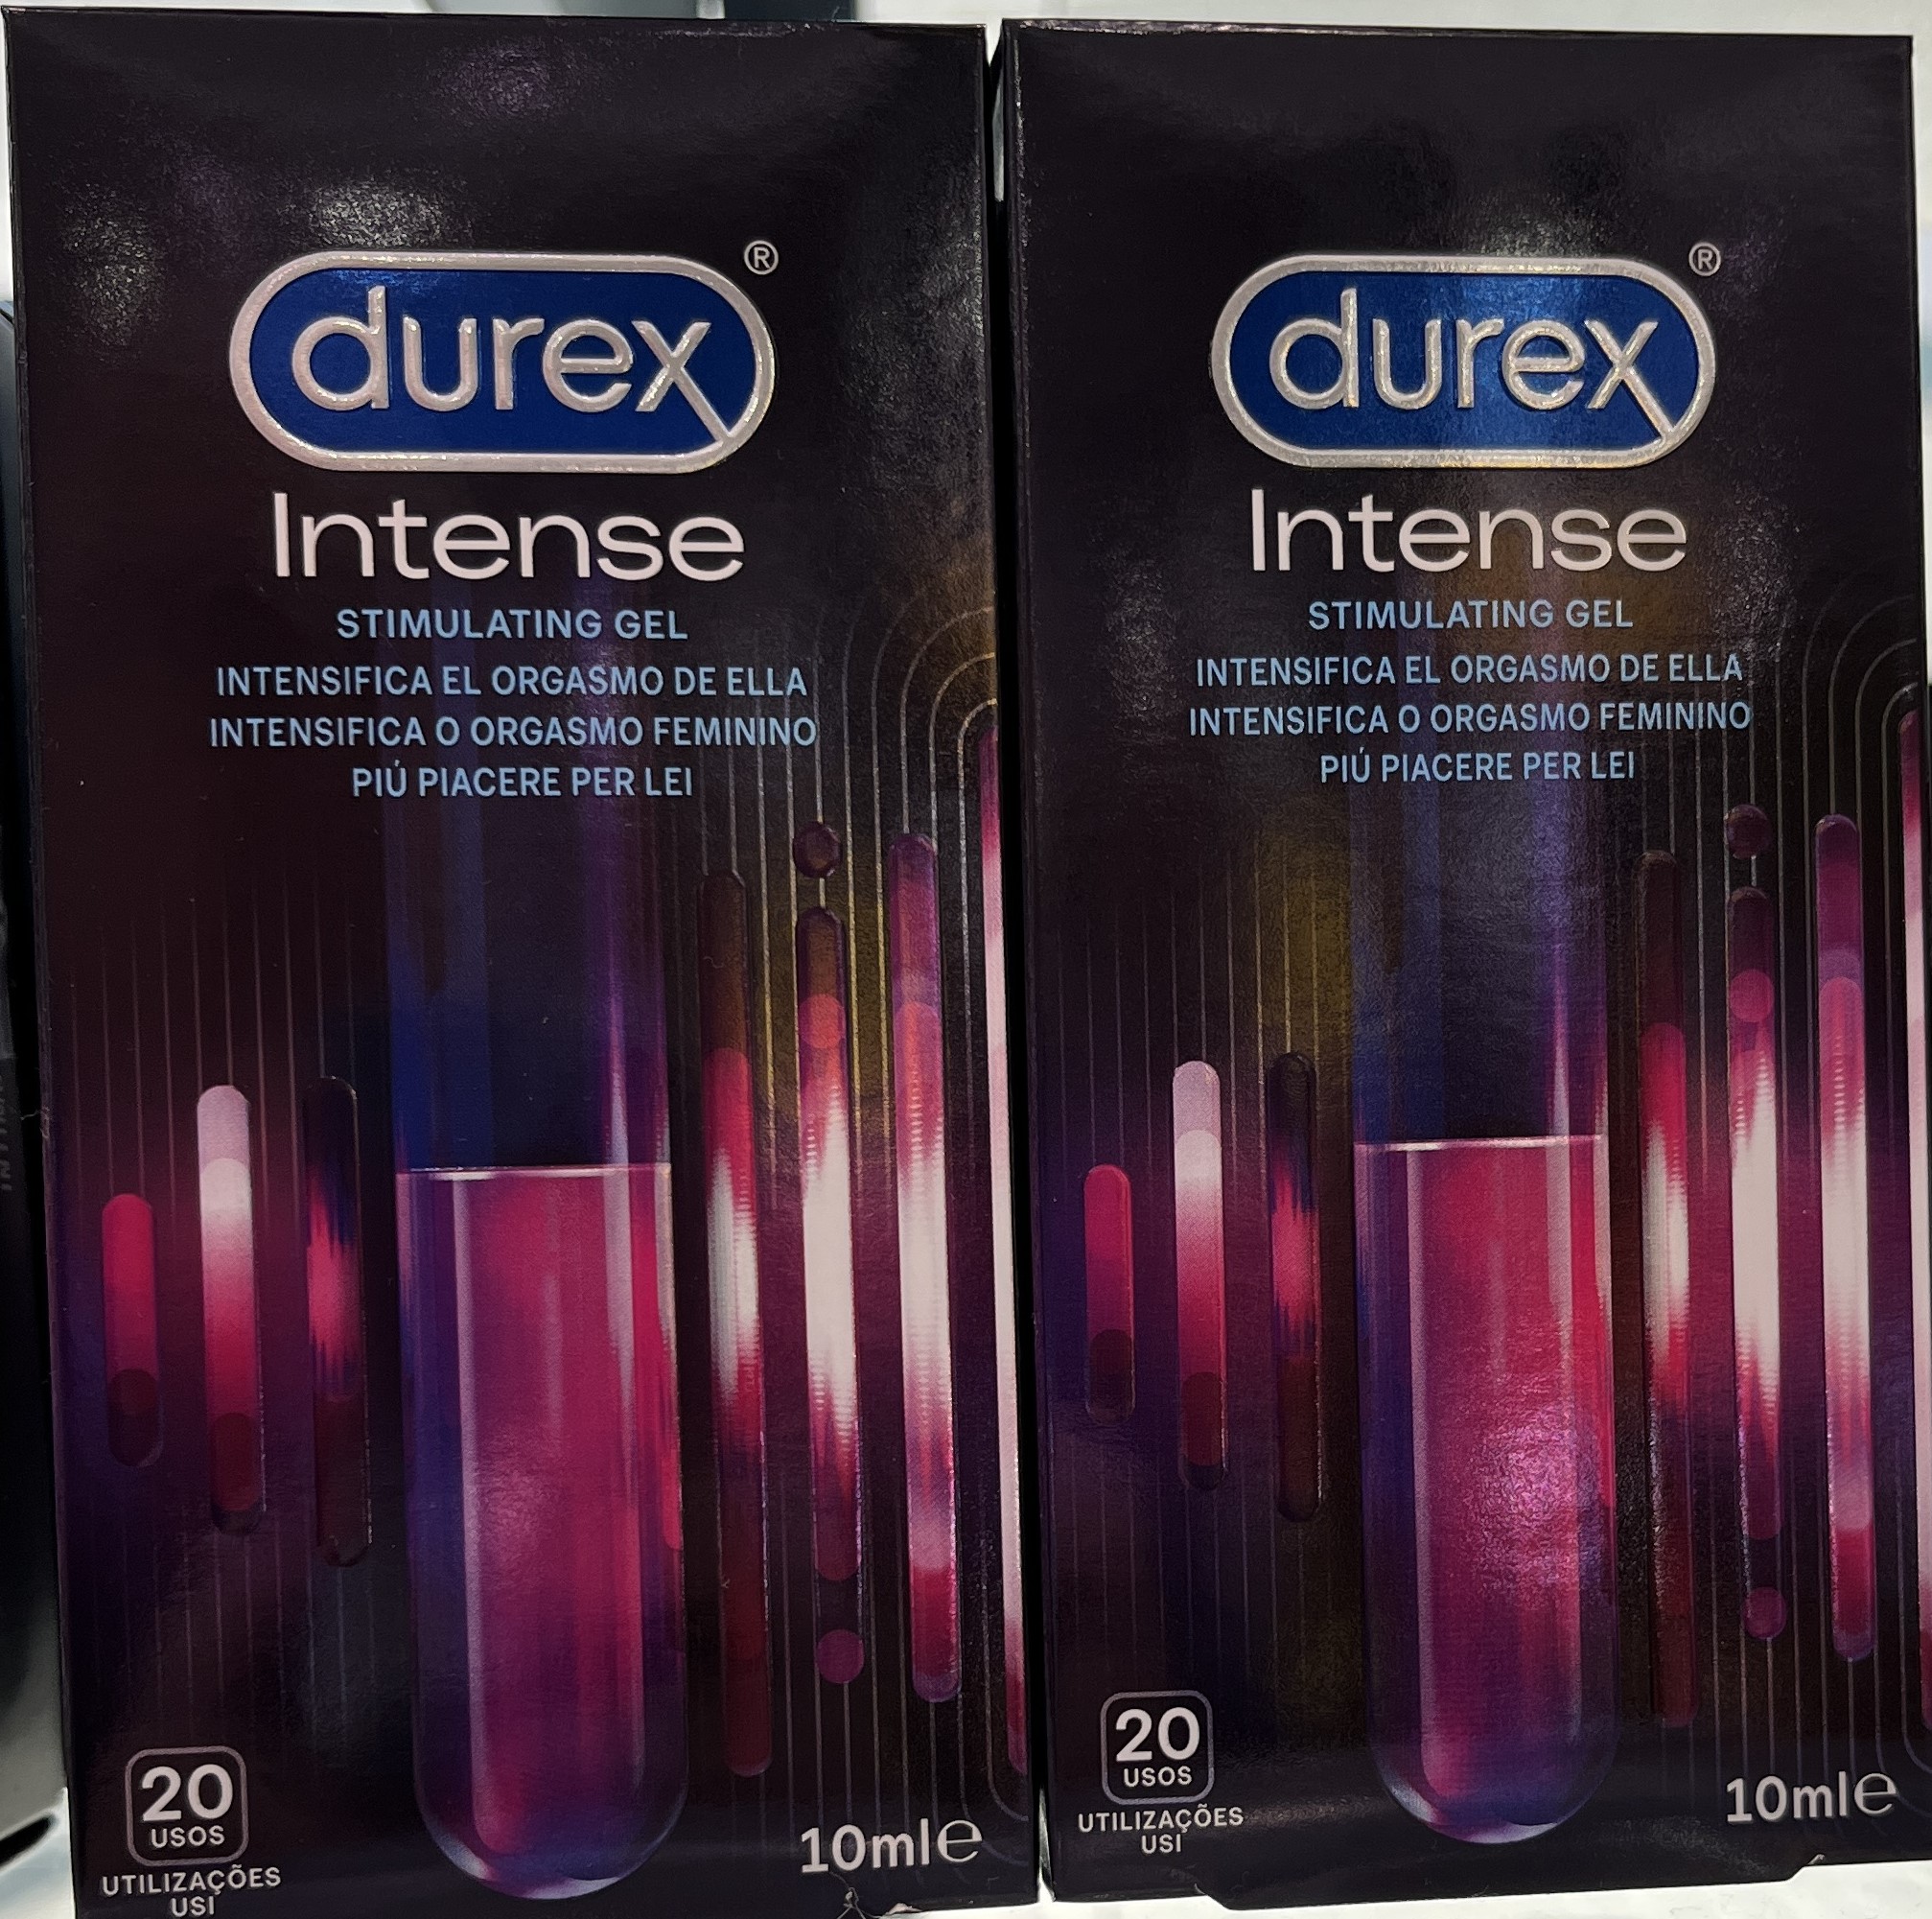 Durex Intense Orgasmic Gel es un gel estimulante que ha sido formulado para potenciar e intensificar el orgasmo en las relaciones sexuales.